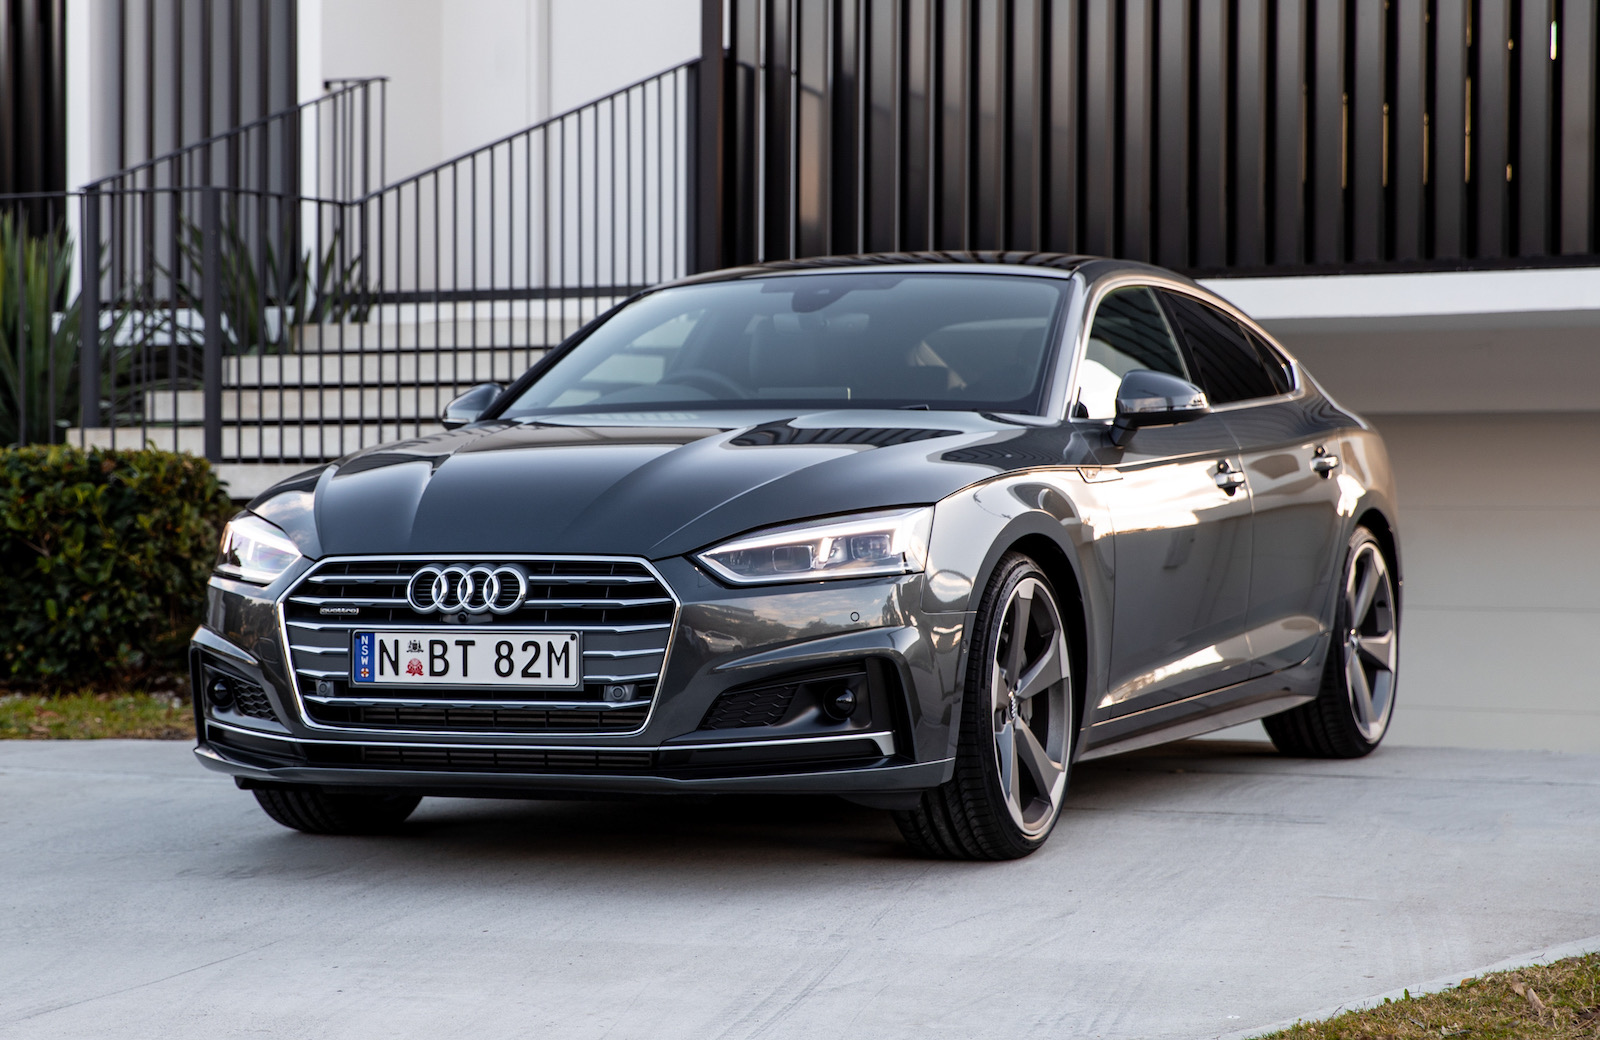 2019 Audi A5 update announced, price cuts for 45 TFSI